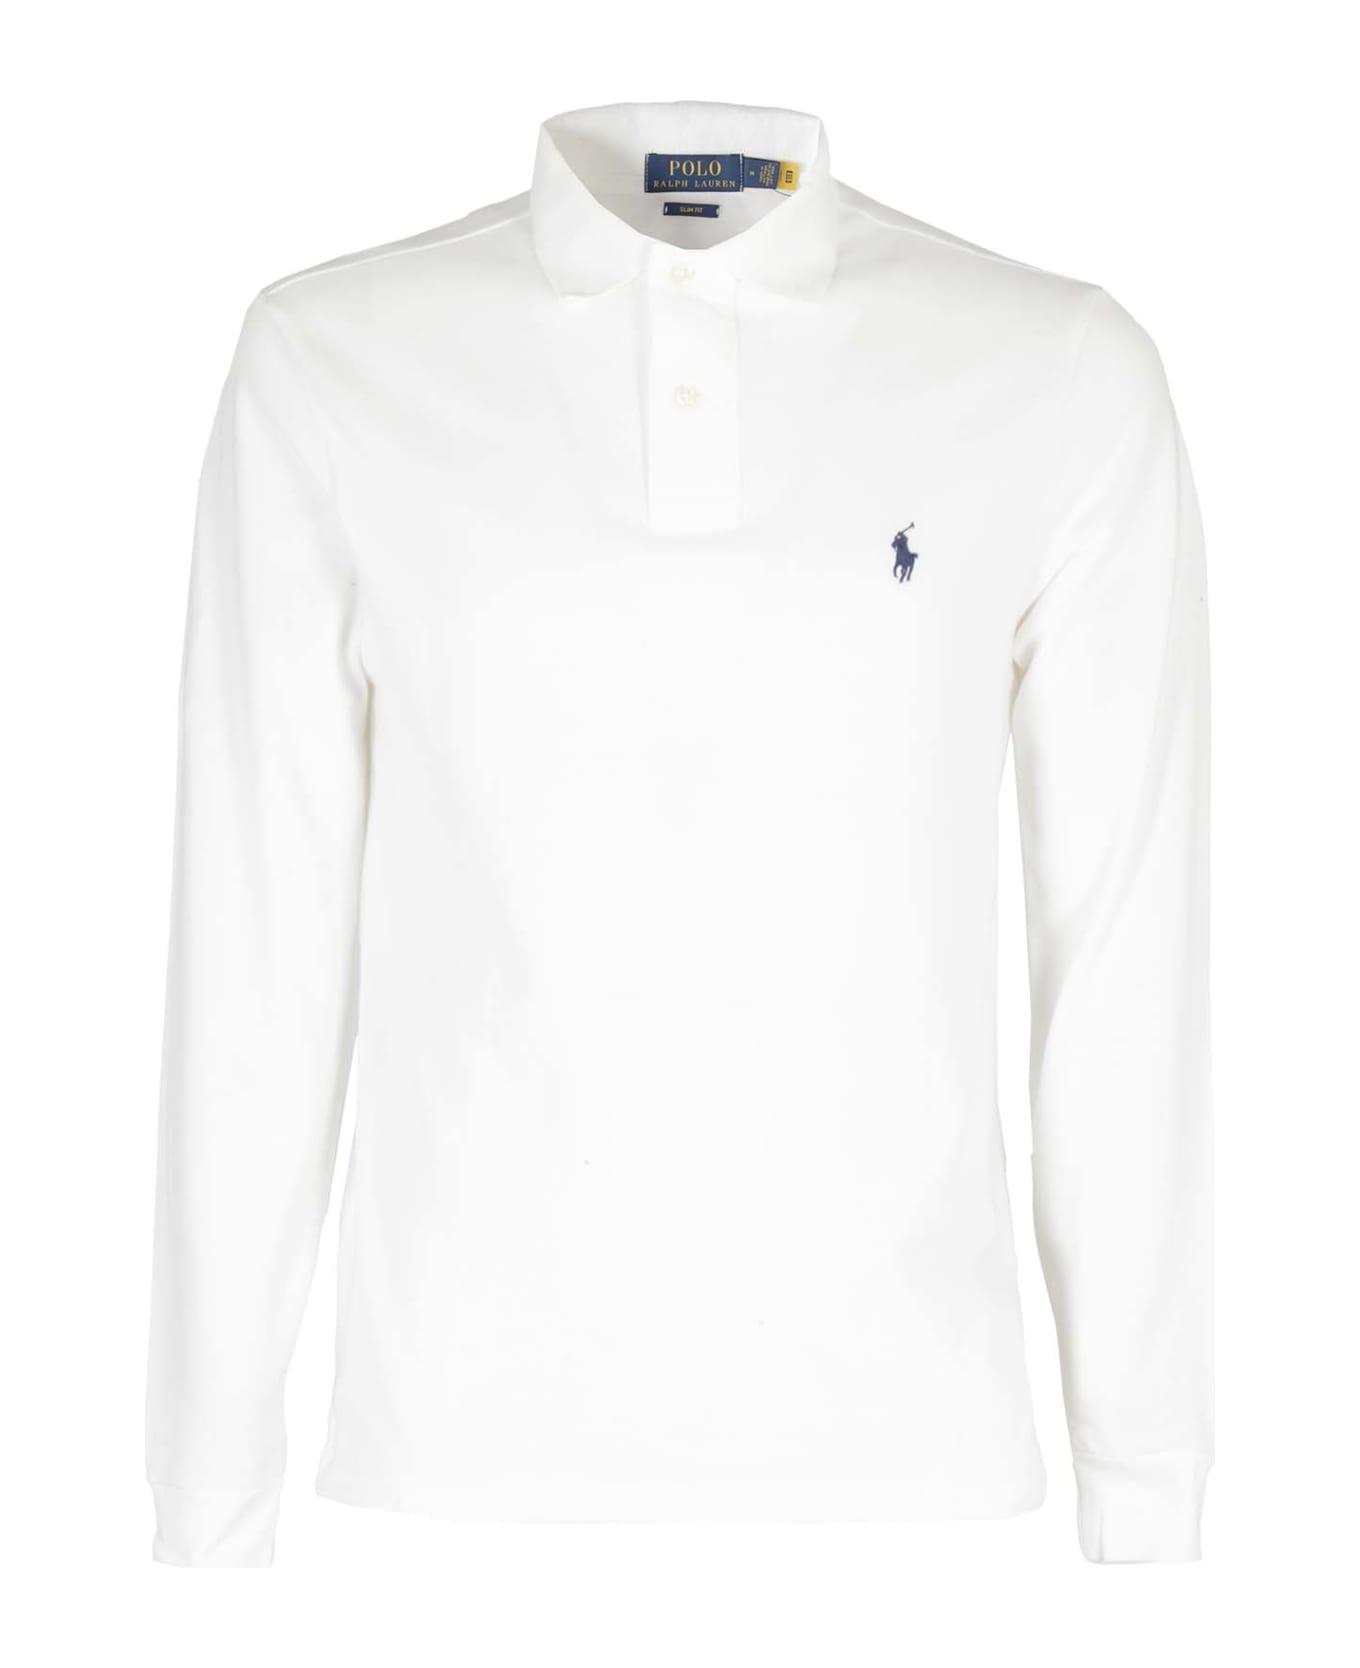 Ralph Lauren White Long-sleeved Slim Fit Polo Shirt - White